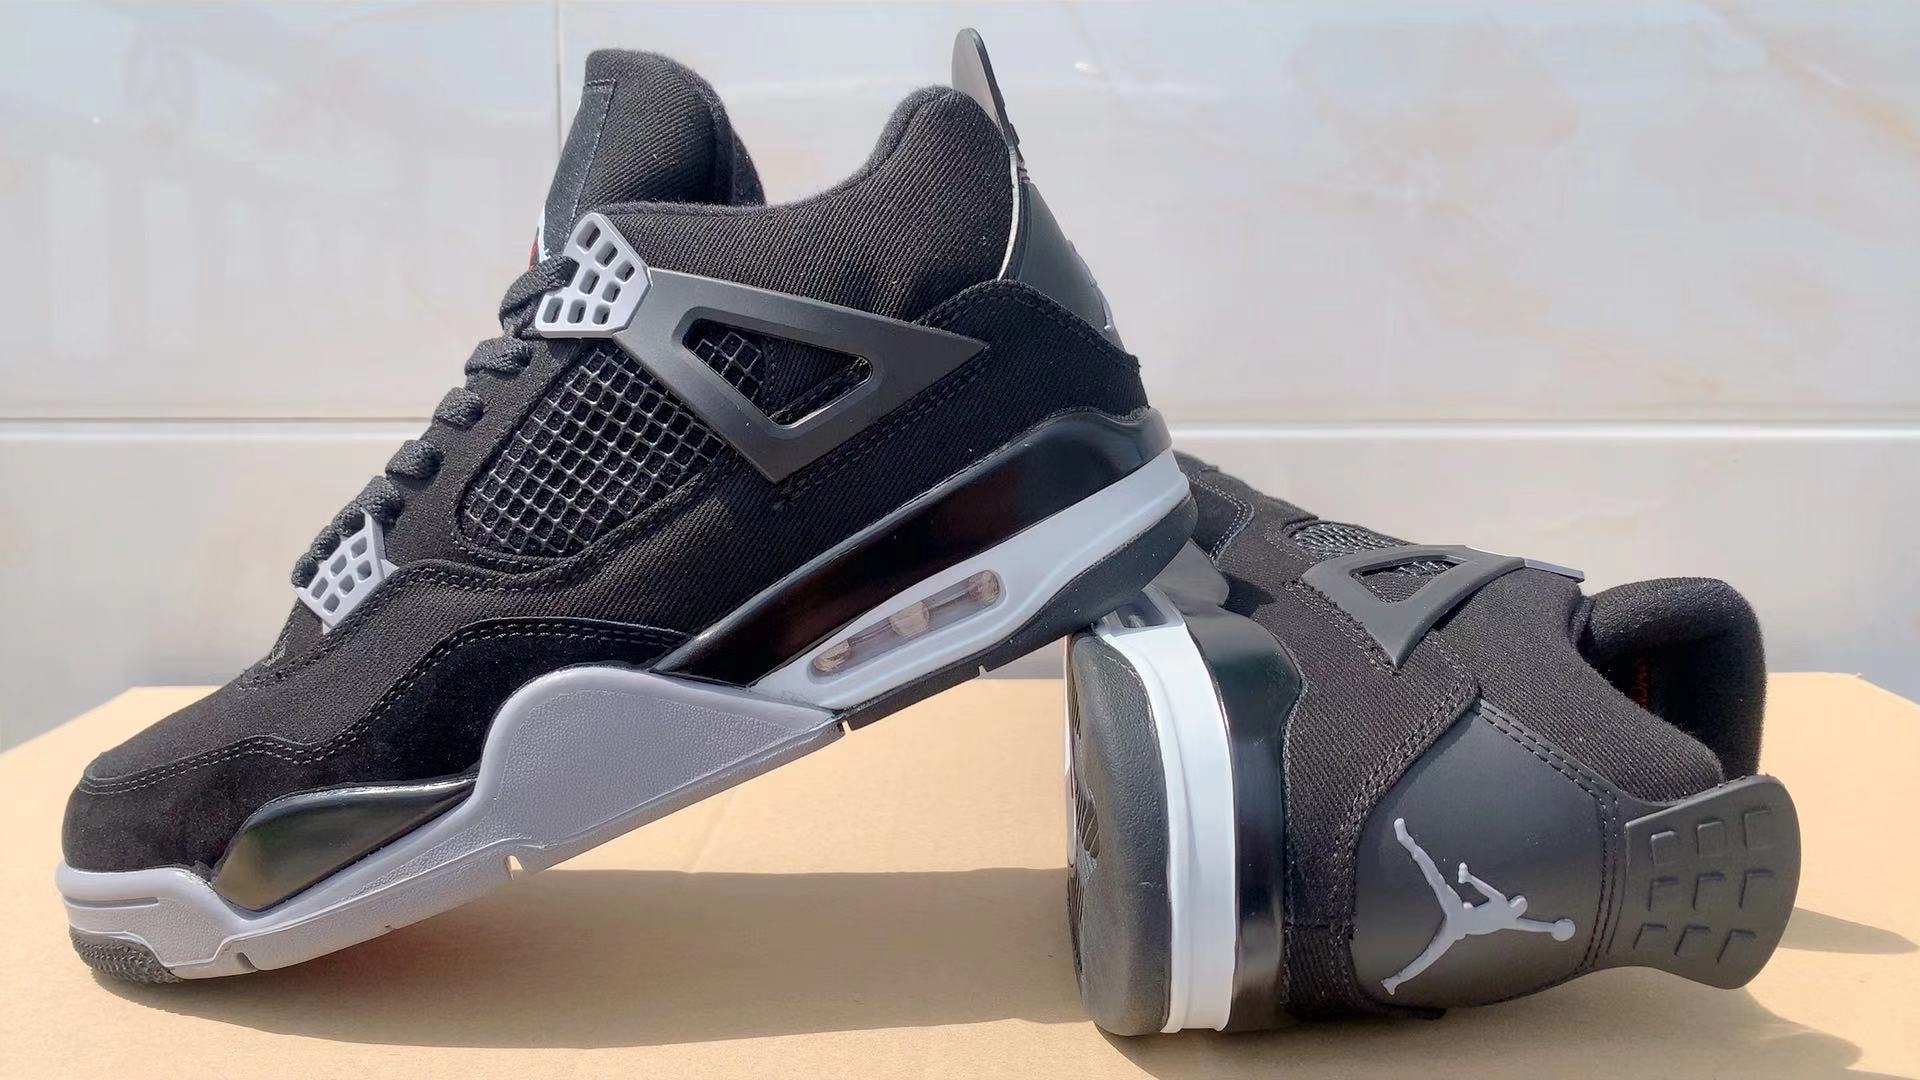 Air Jordan 4 Sneakers For Men in 256526, cheap Jordan4, only $69!